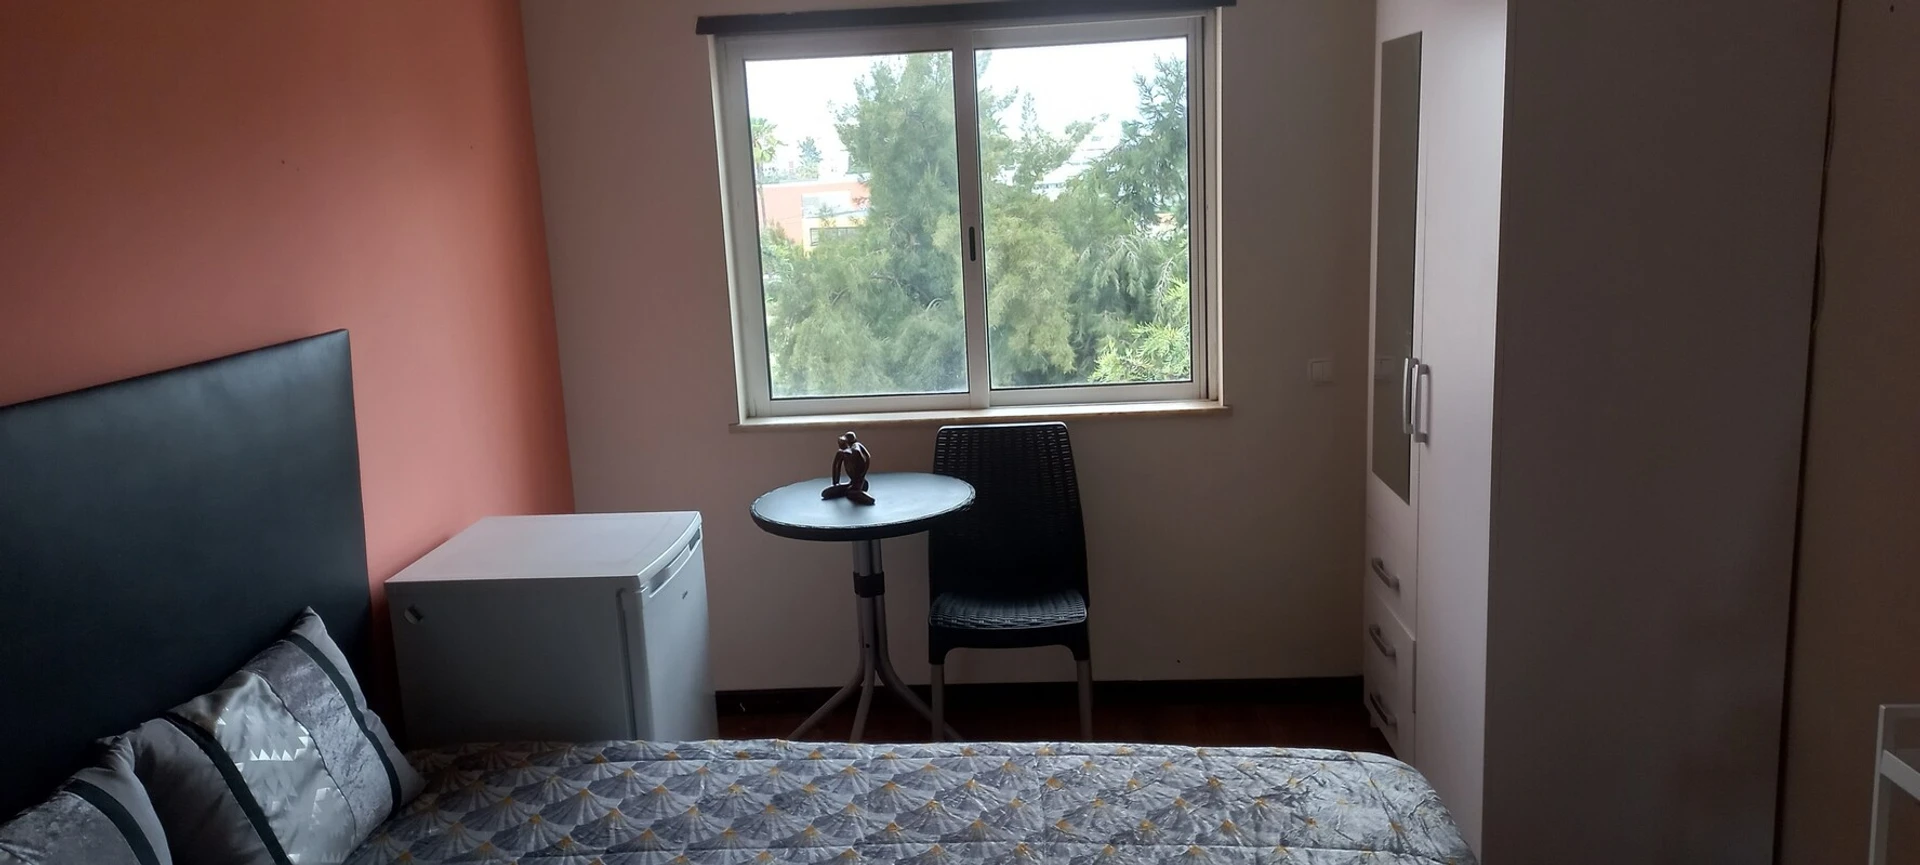 Quarto para alugar num apartamento partilhado em Faro